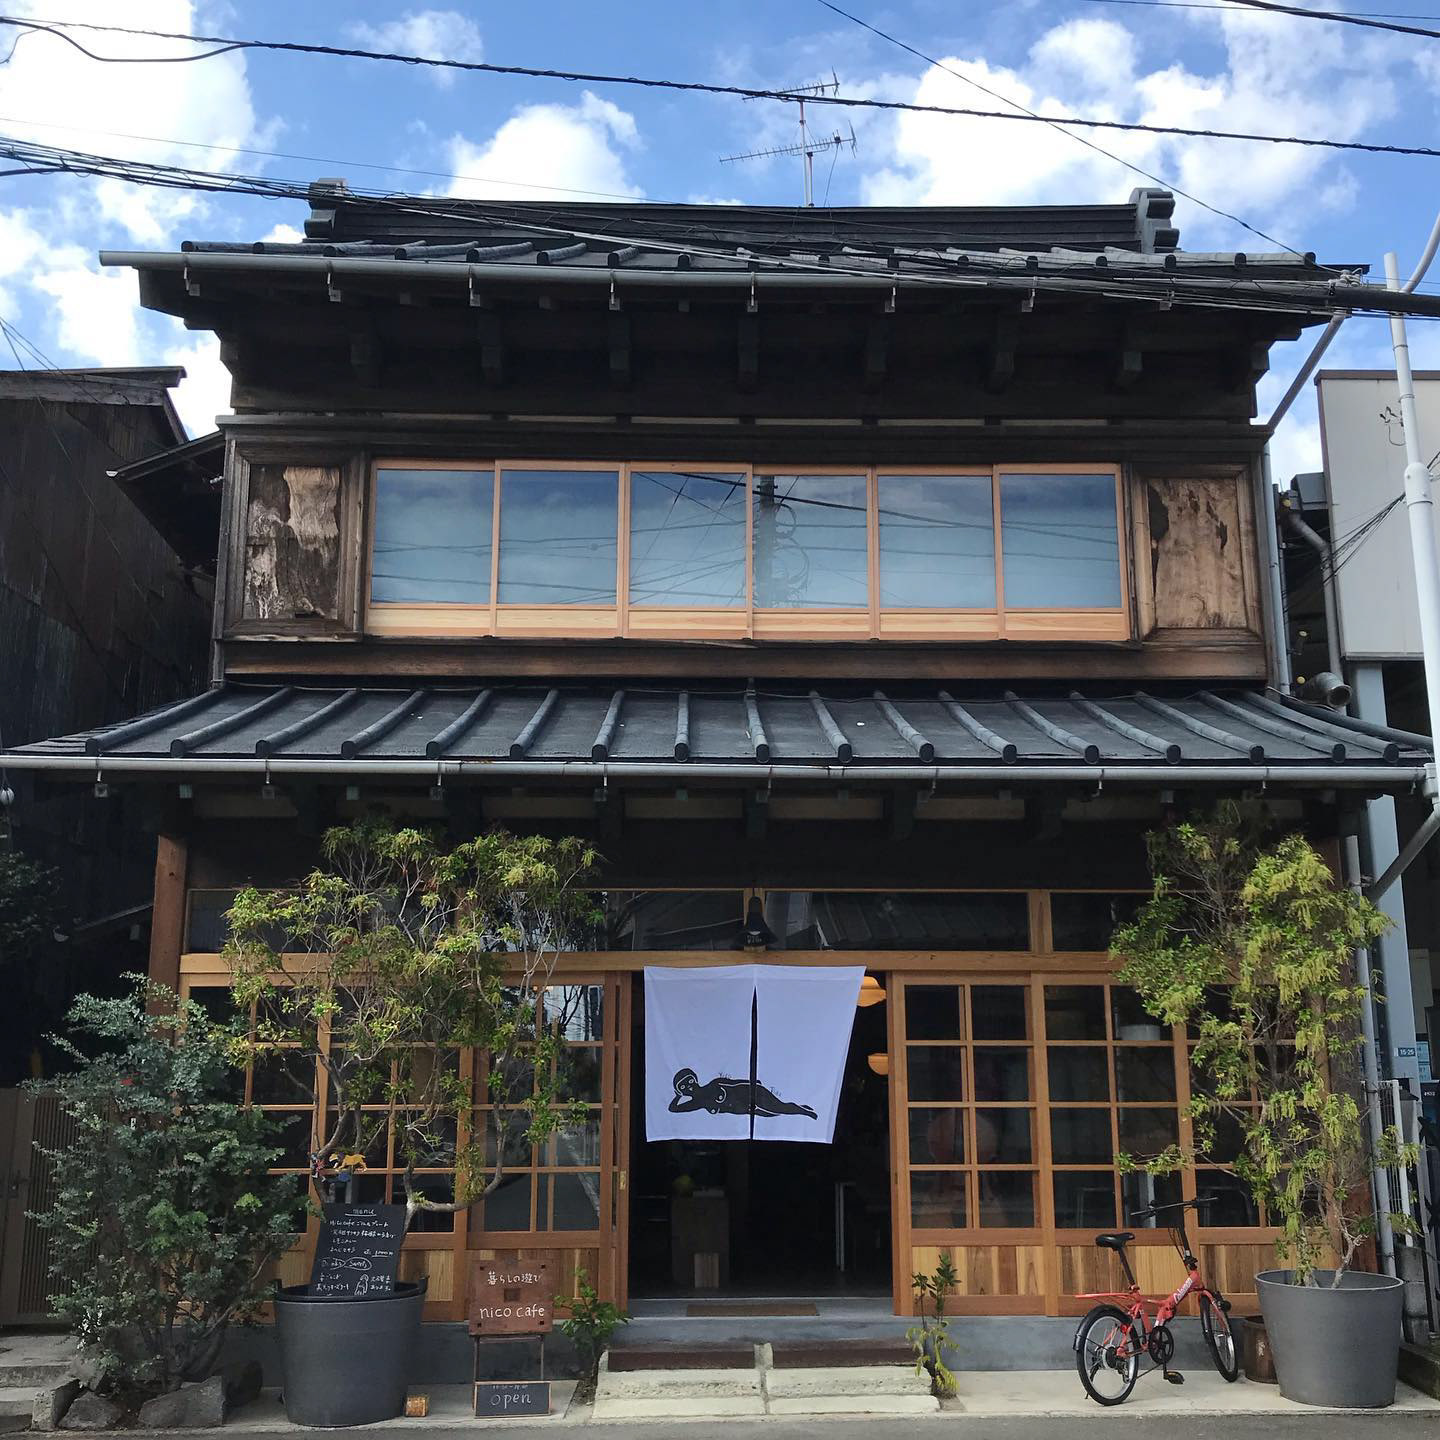 小田原の子ども連れでも入店することができるおすすめのカフェ4選 神奈川イベントプラス 親子で楽しいお得な週末お出かけ情報